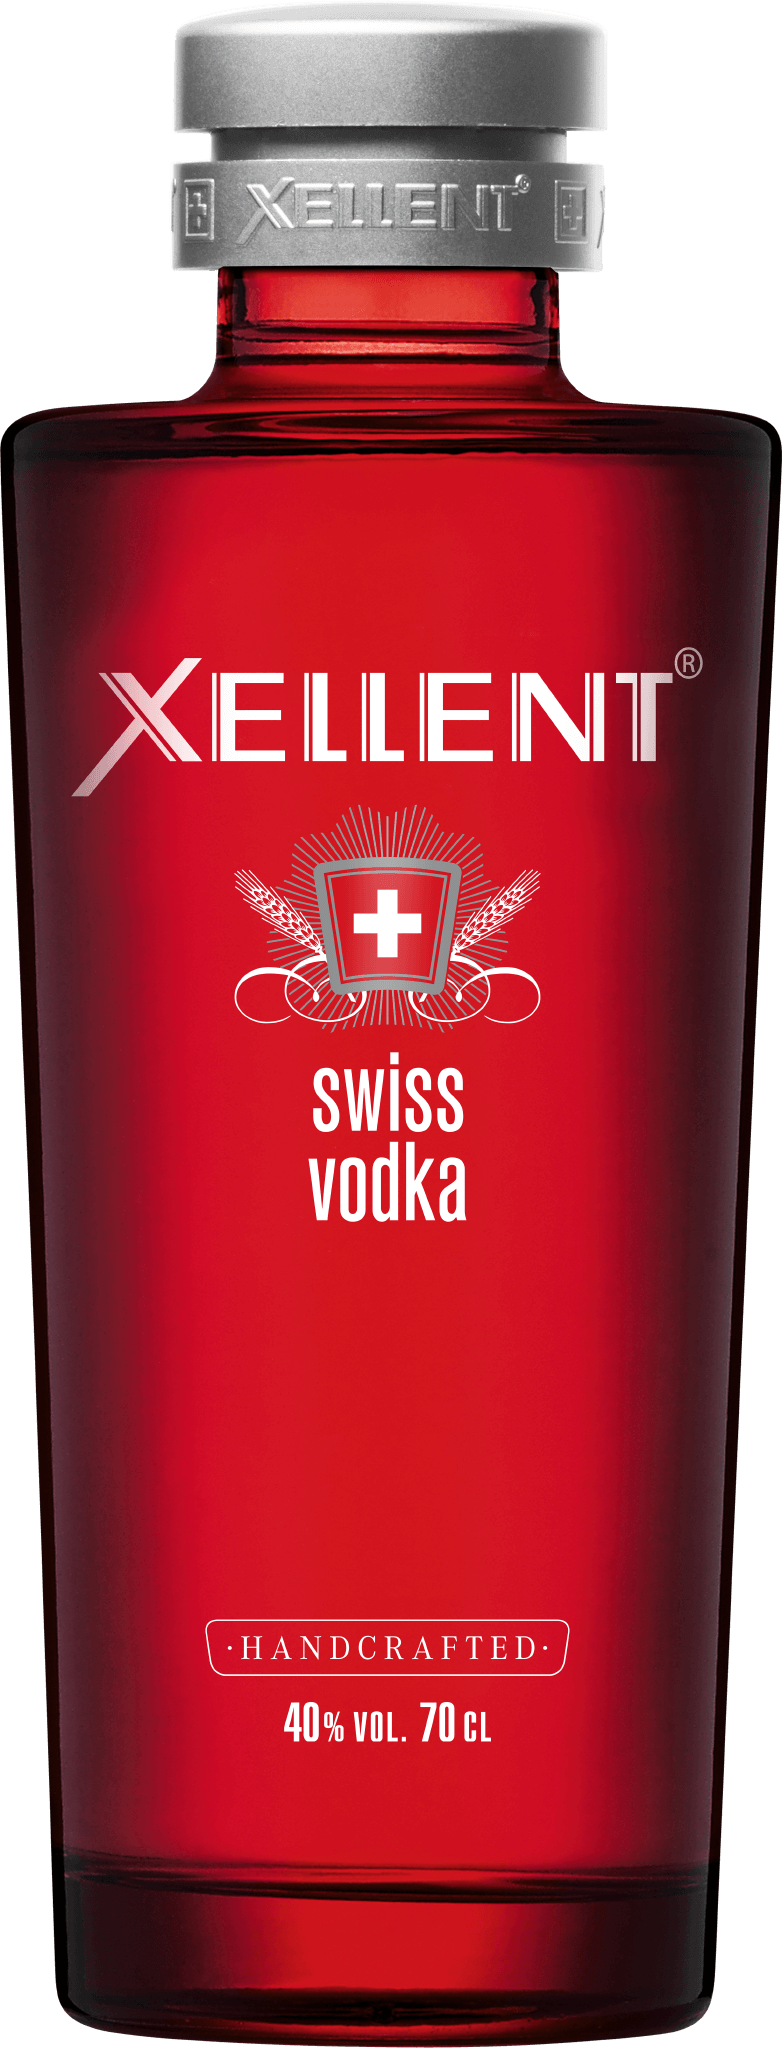 Xellent Swiss Vodka | Schweizer Vodka | Vodka